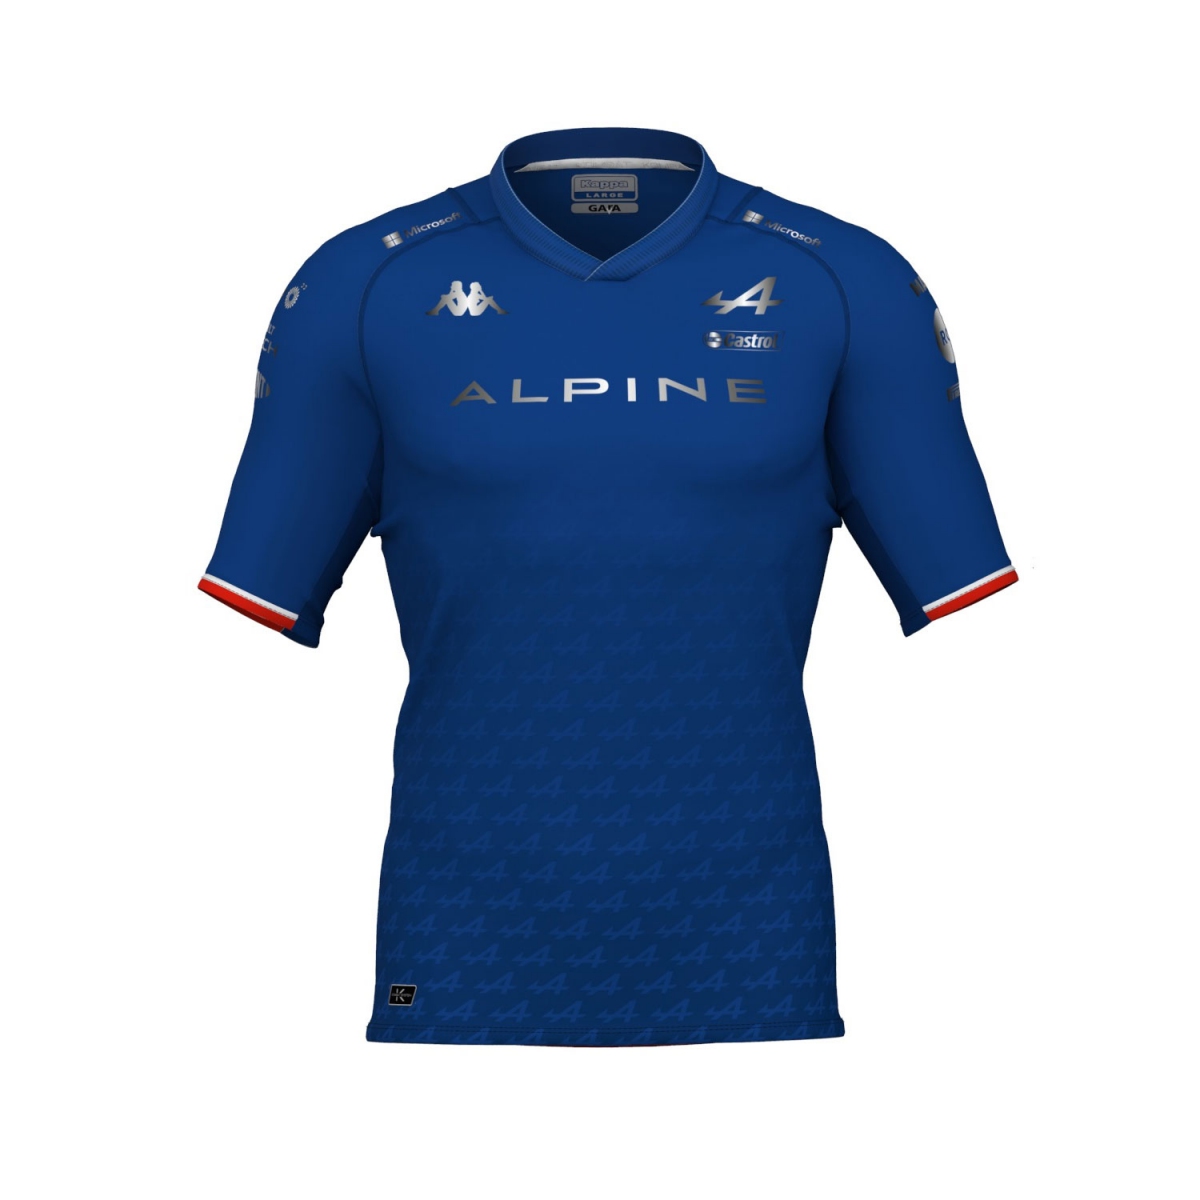 Alpine F1 koszulka męska team esteban ocon team t-shirt